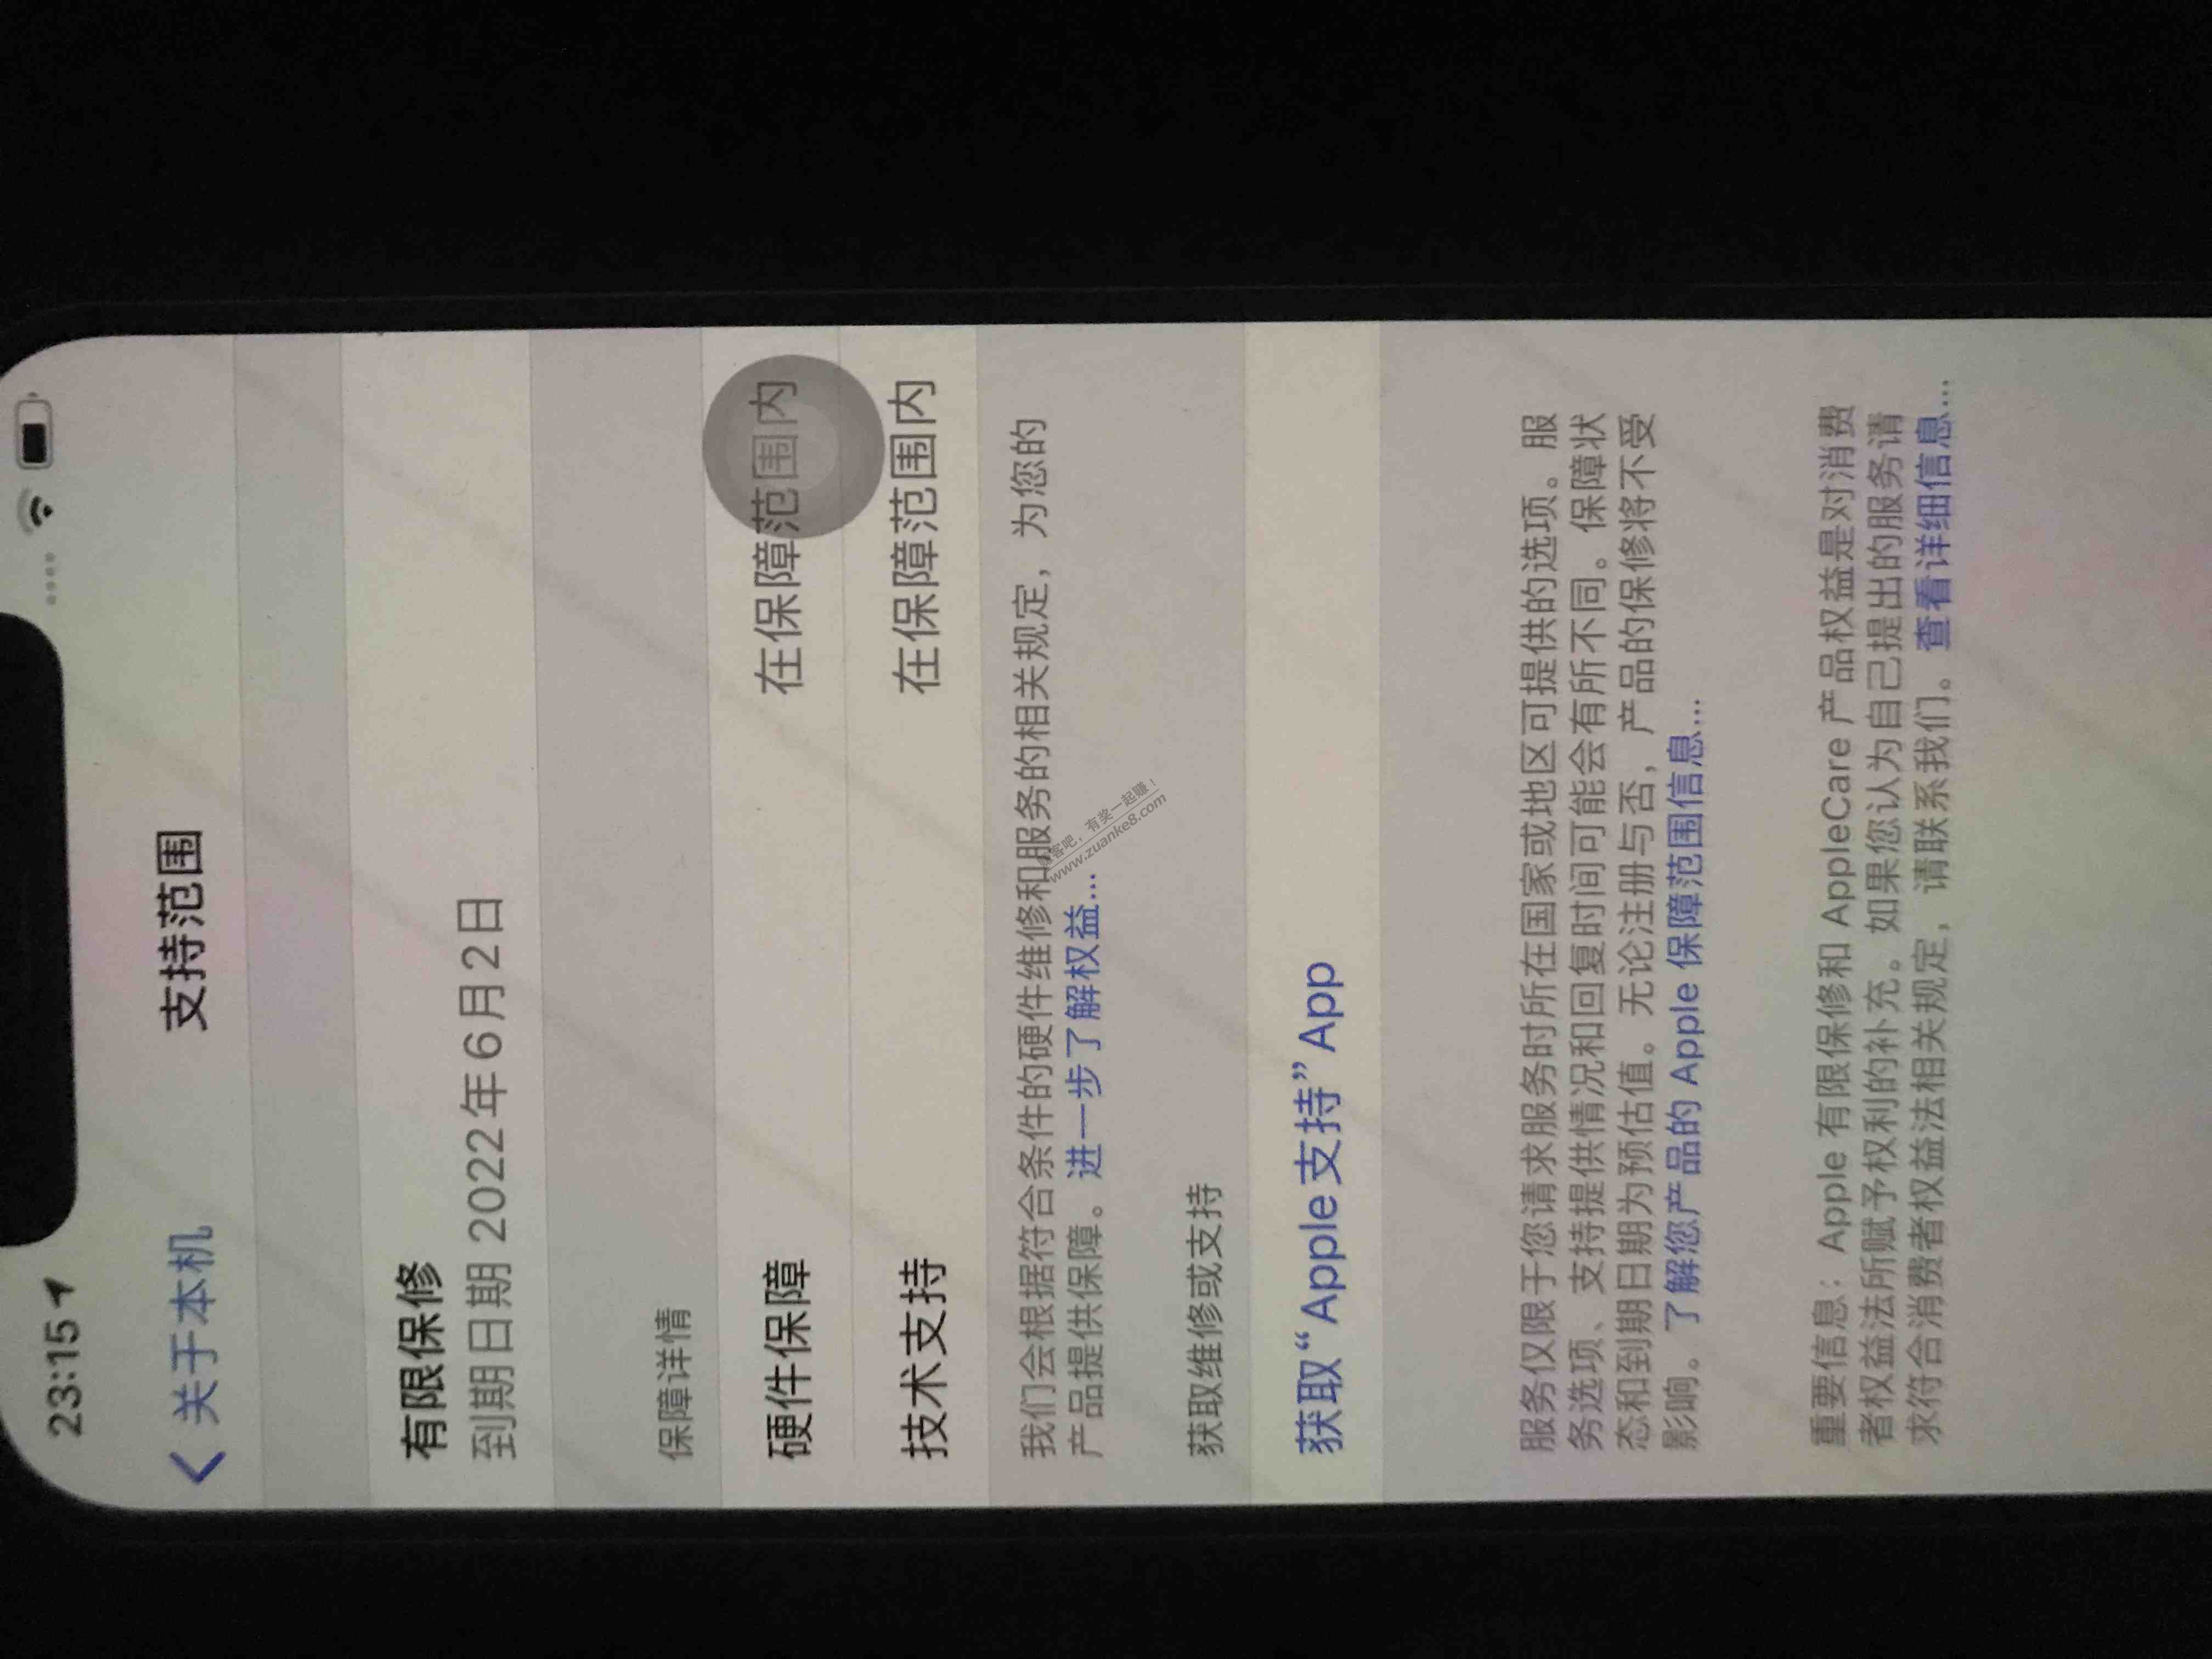 好奇心 京东苹果到货 自用了一台-亏了 5308买的-惠小助(52huixz.com)